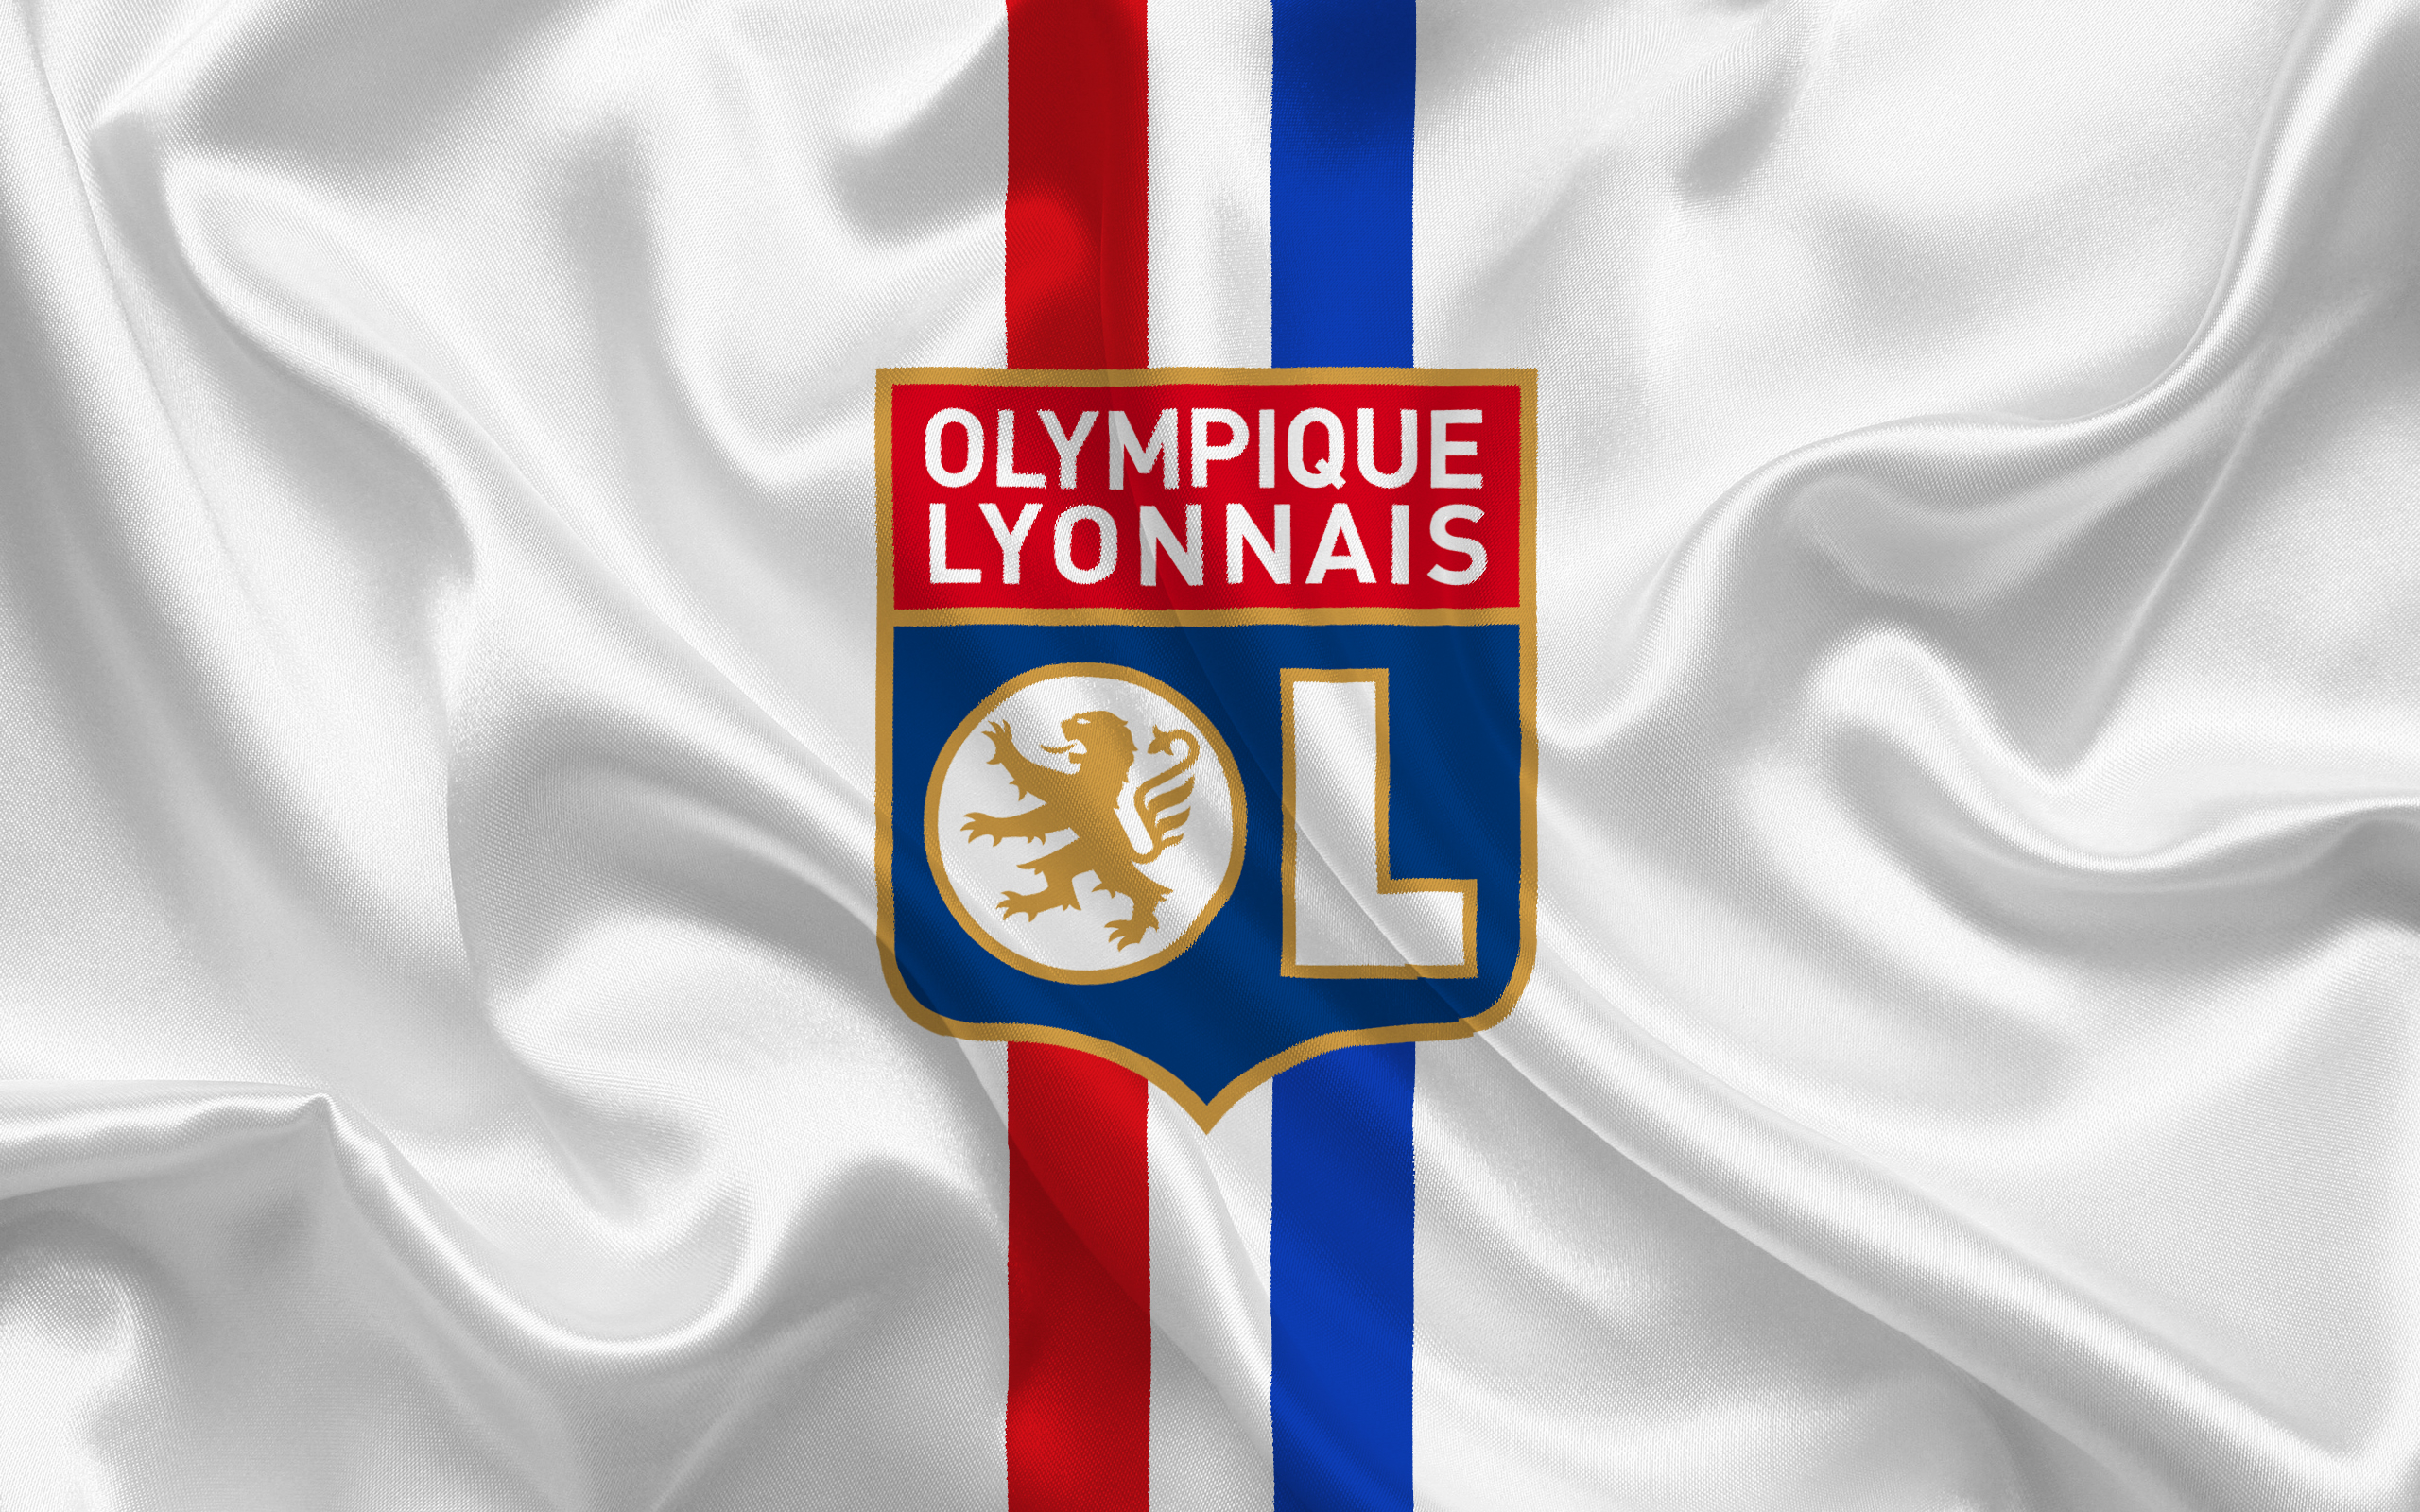 Melhores papéis de parede de Olympique Lyonnais para tela do telefone